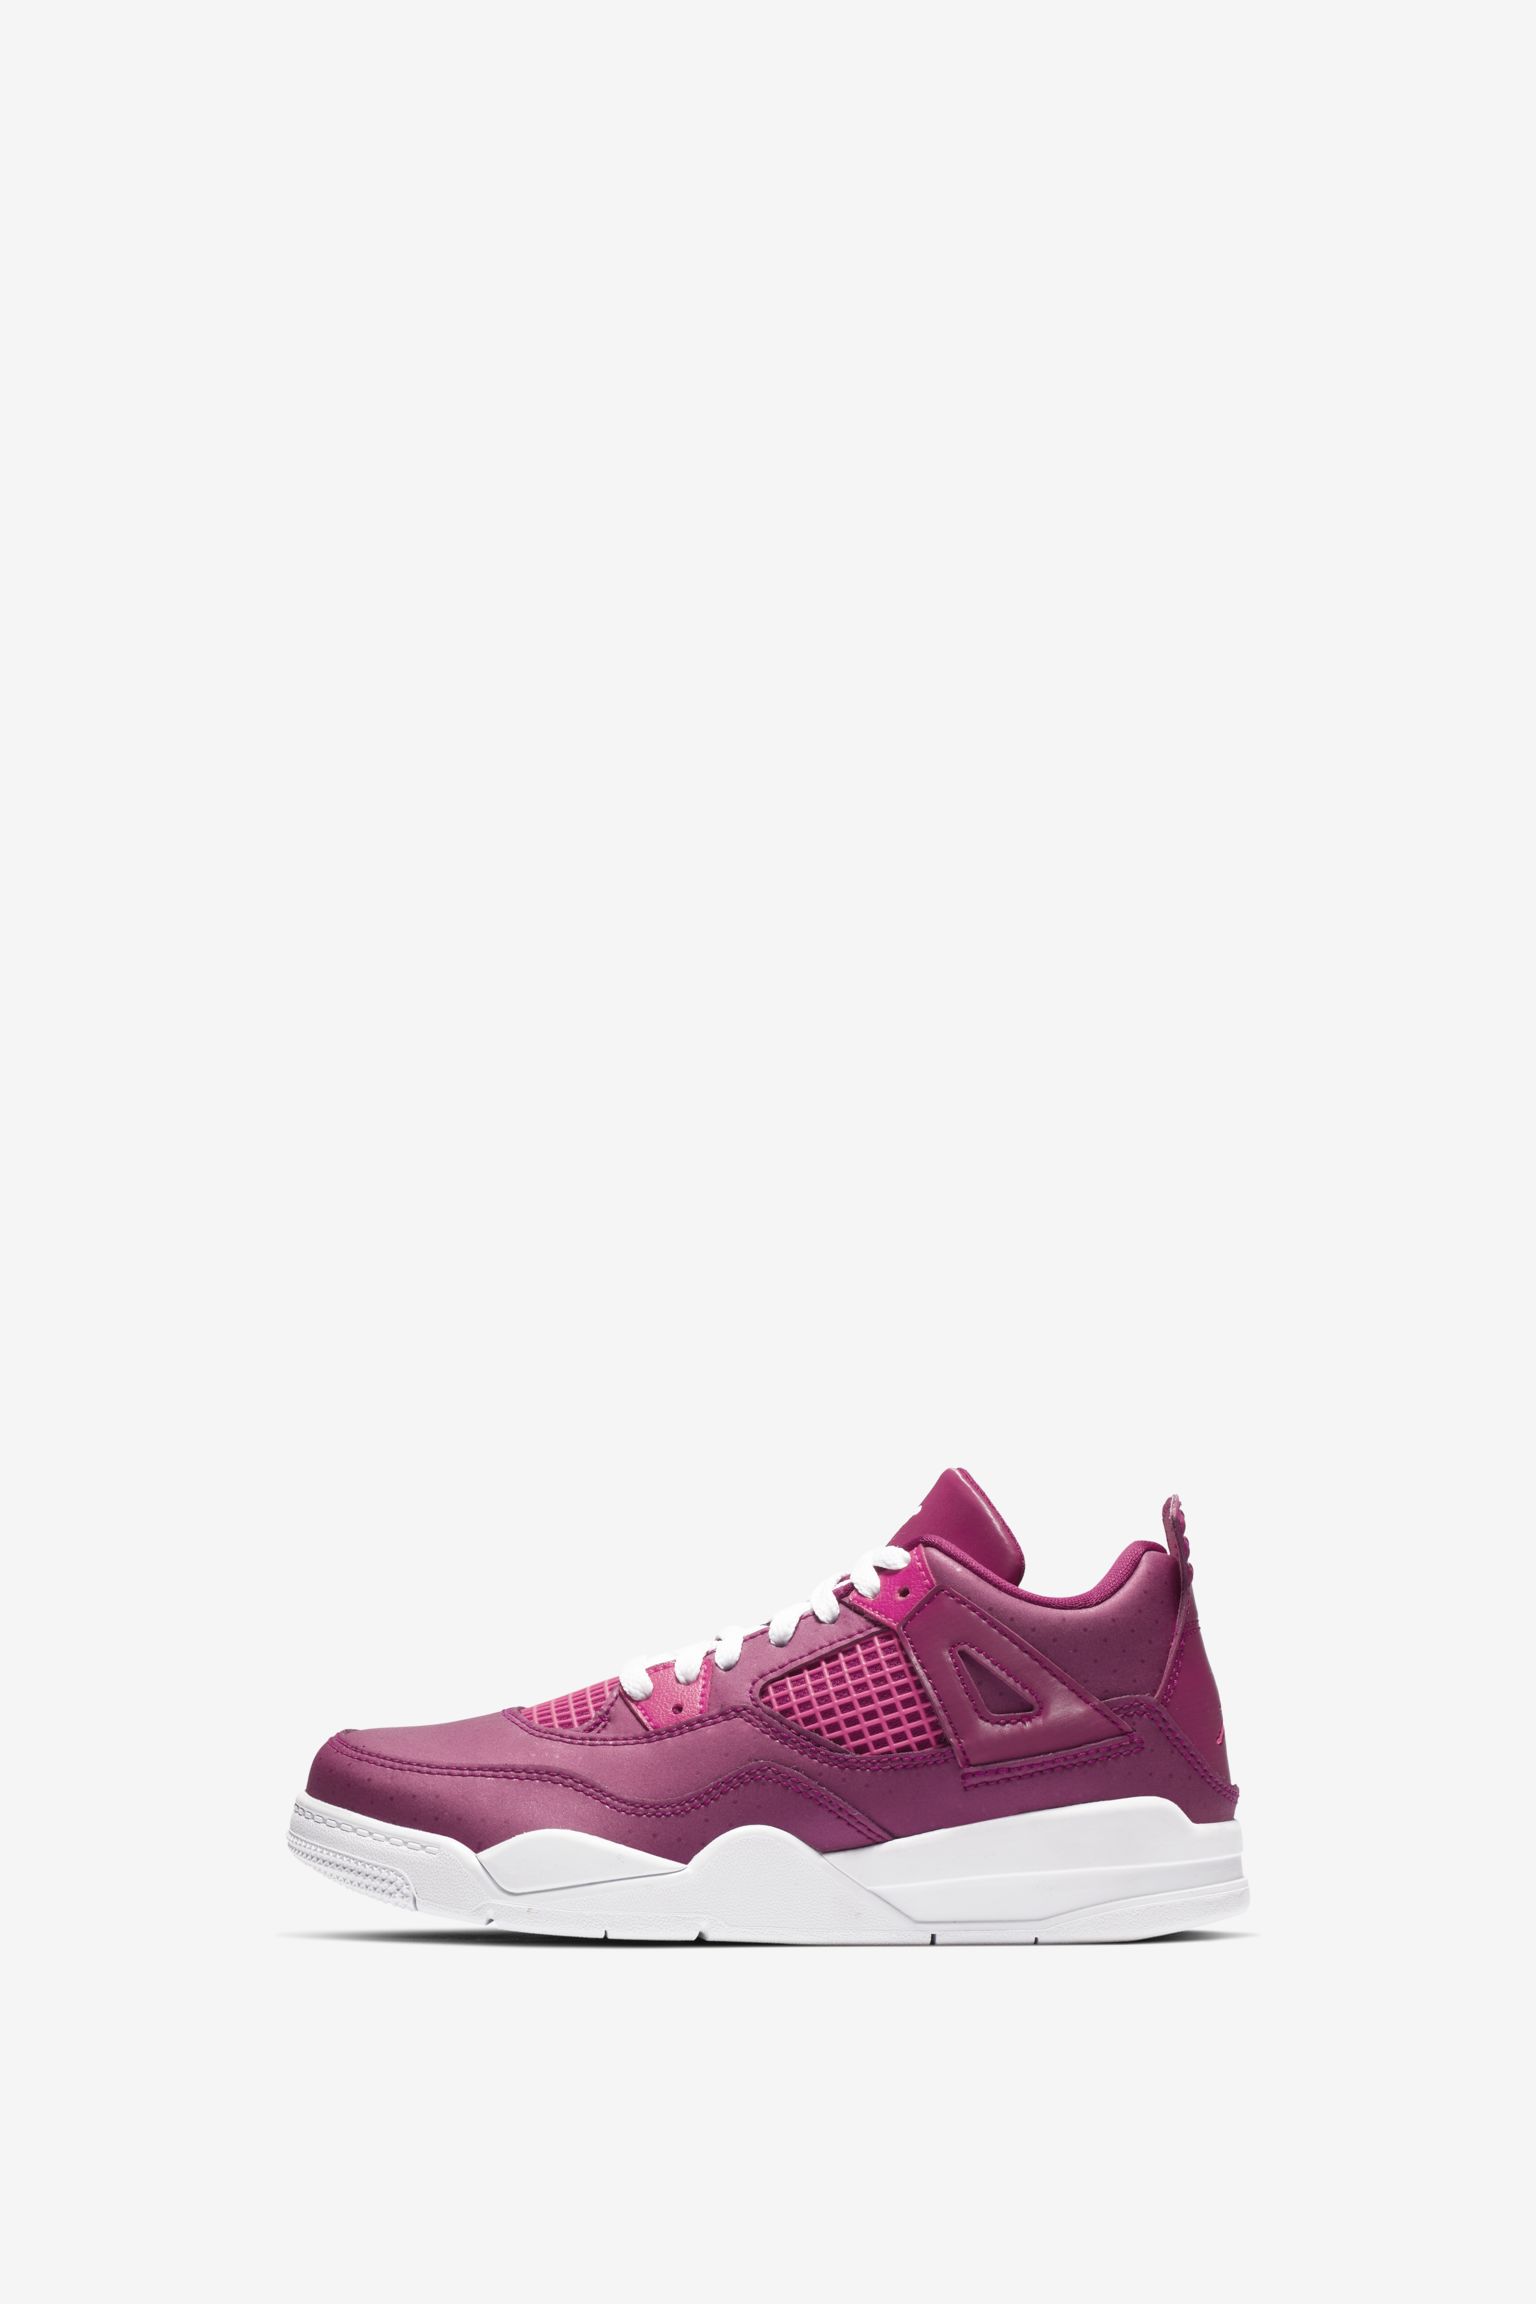 Big Kids' Air Jordan 4 Retro 'Berry Pink' Release Date. Nike⁠+ SNKRS